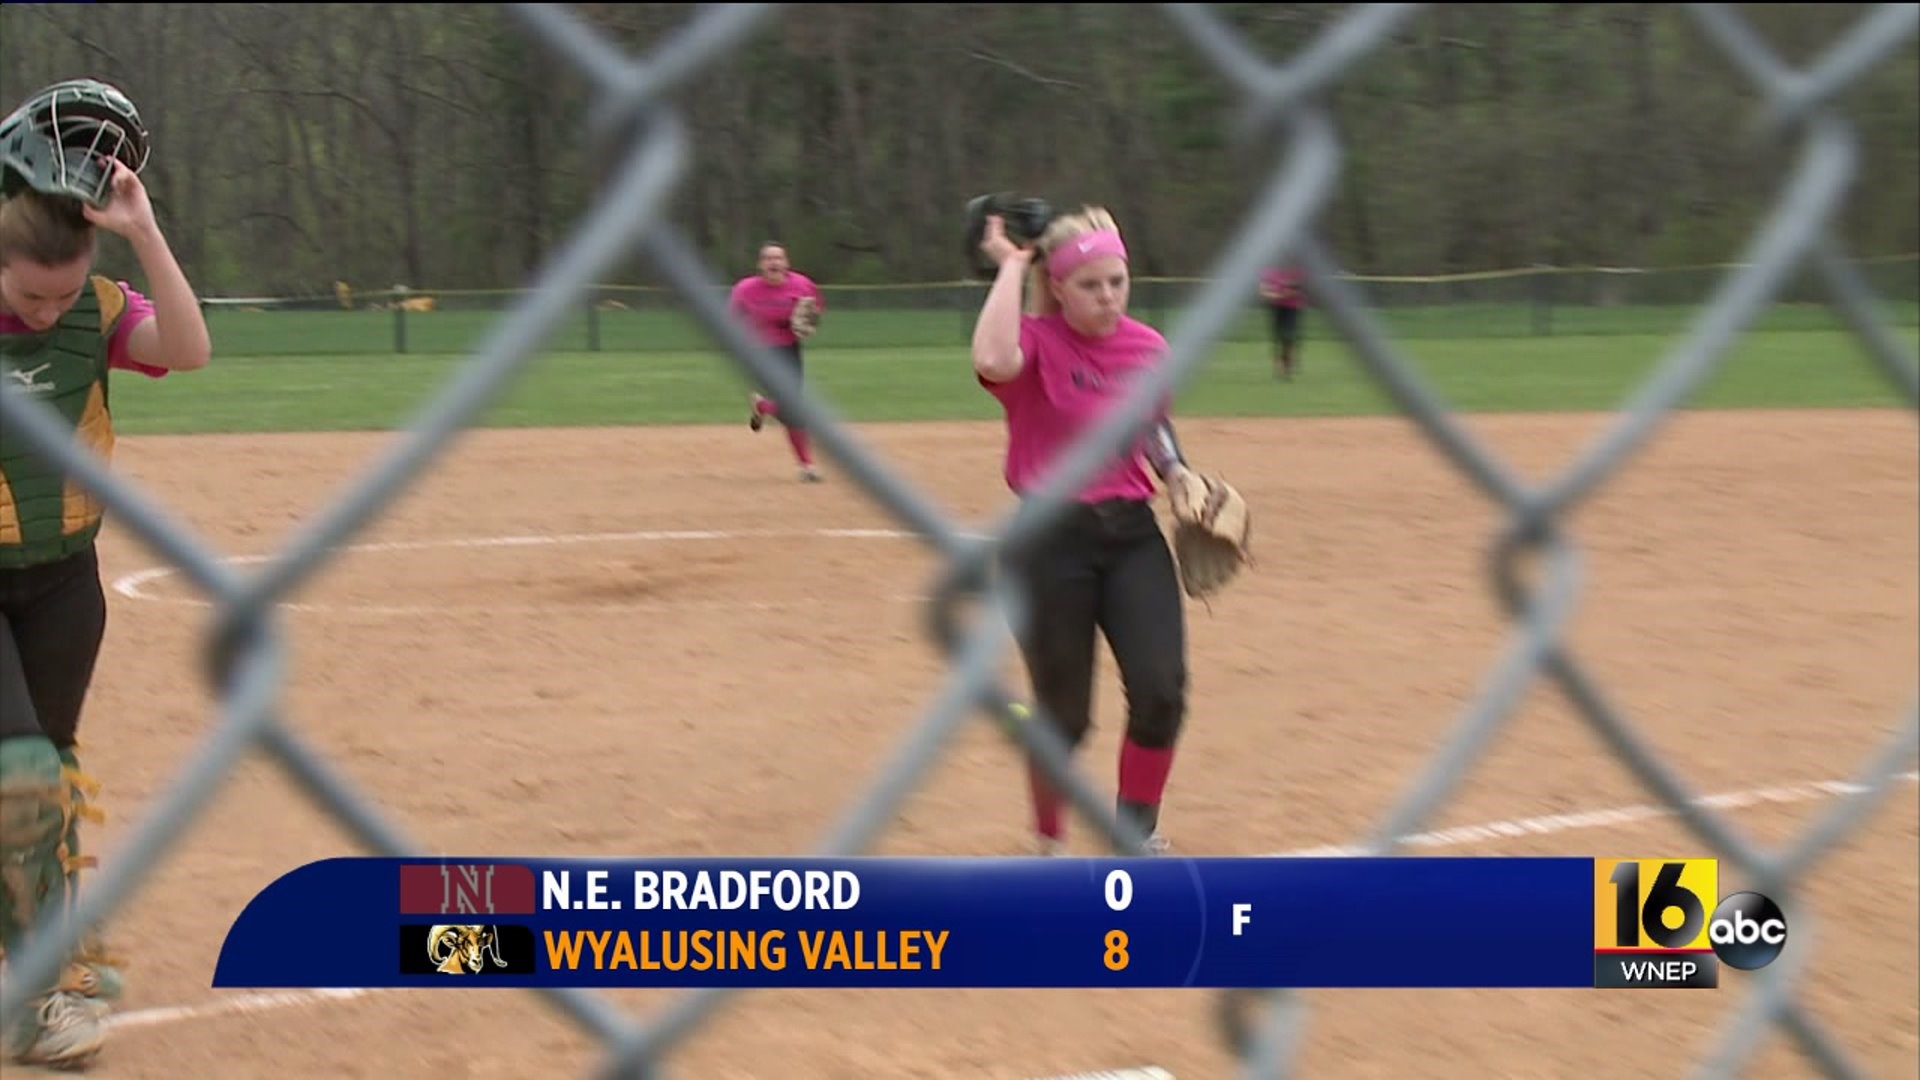 NE Bradford vs Wyalusing Valley softball